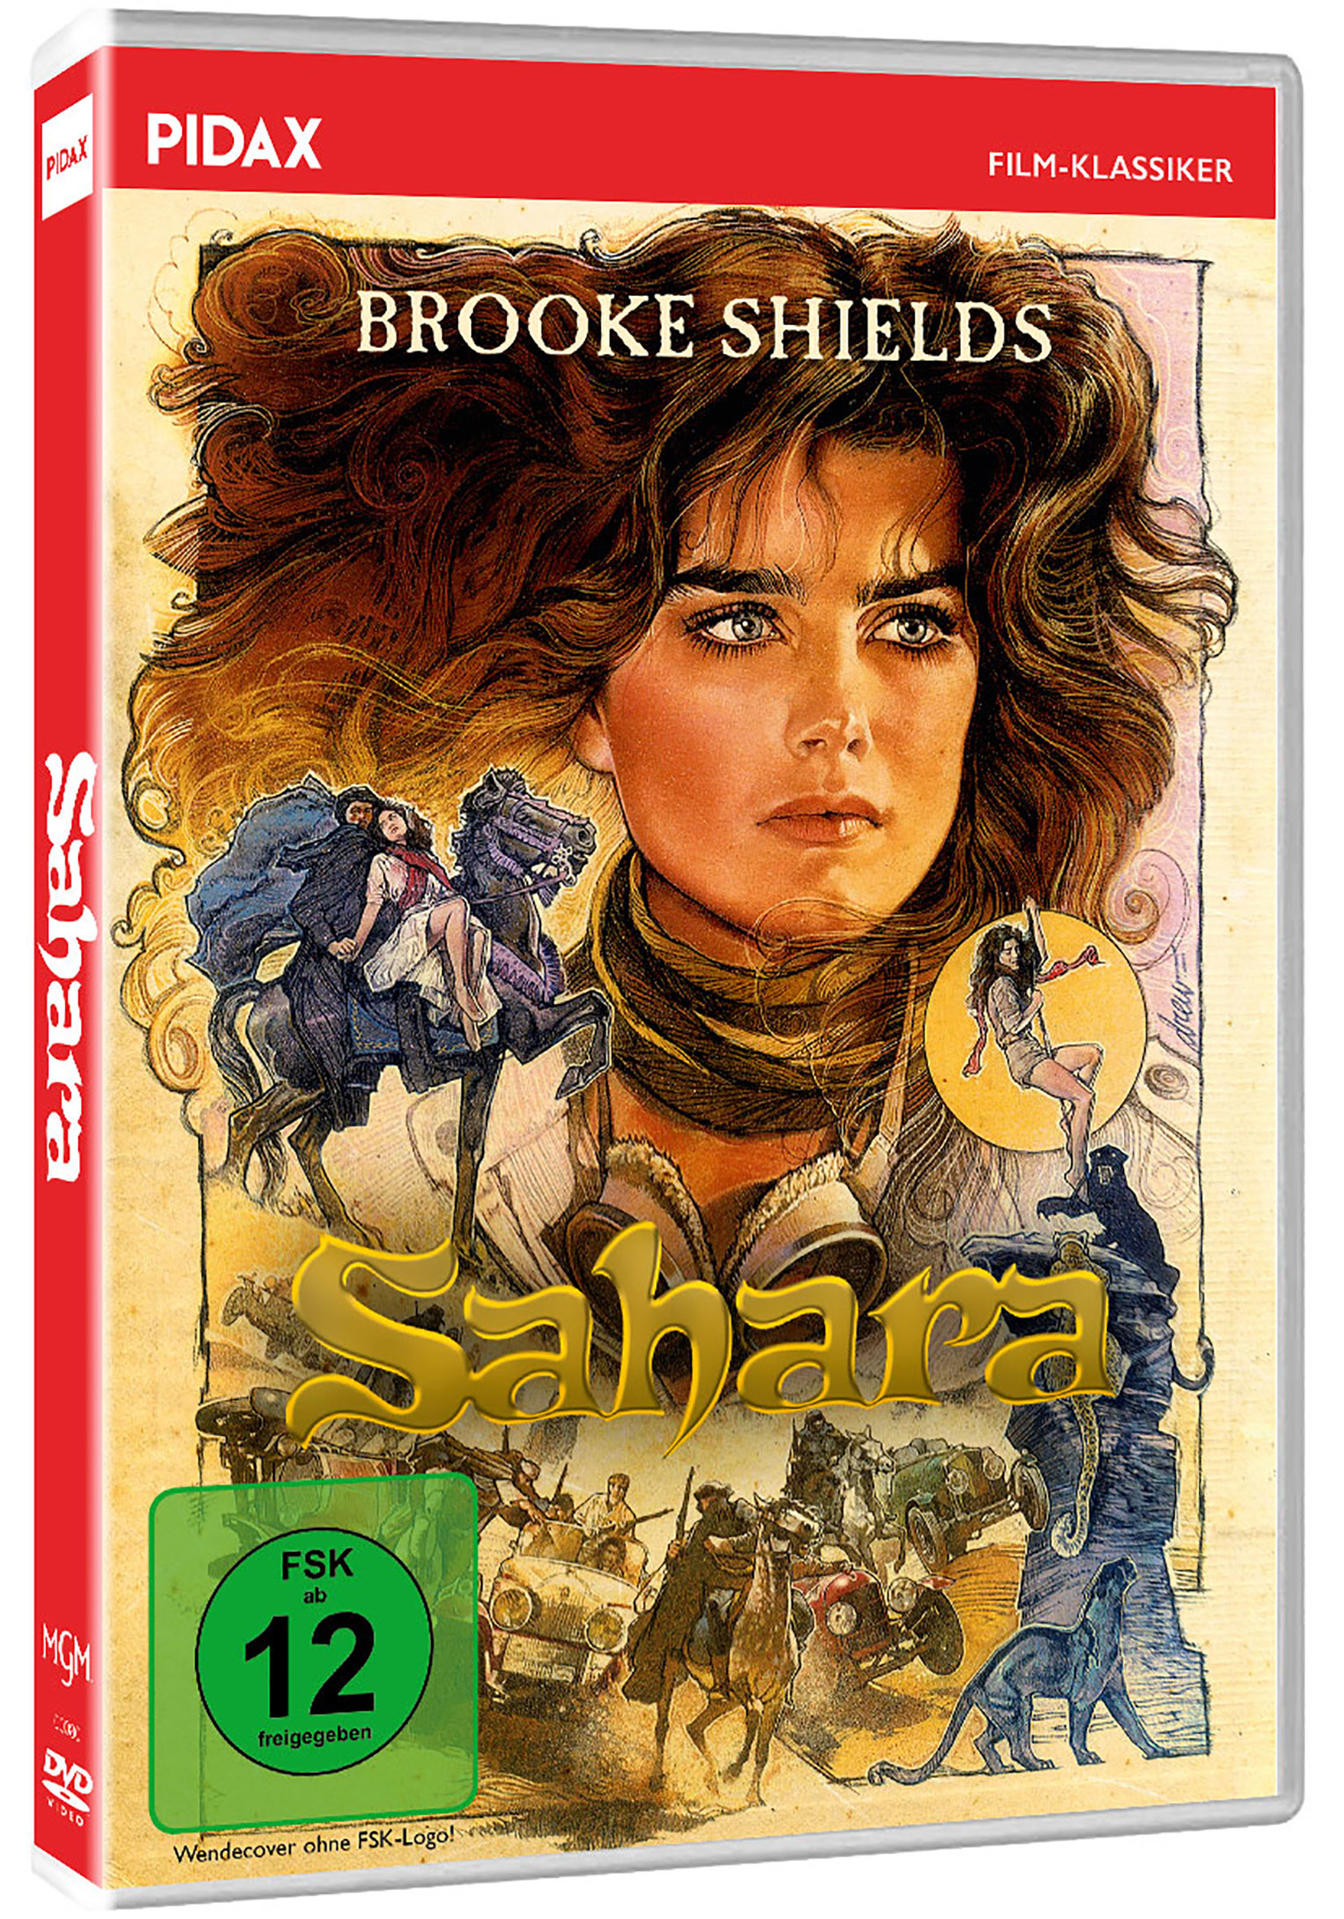 DVD Sahara